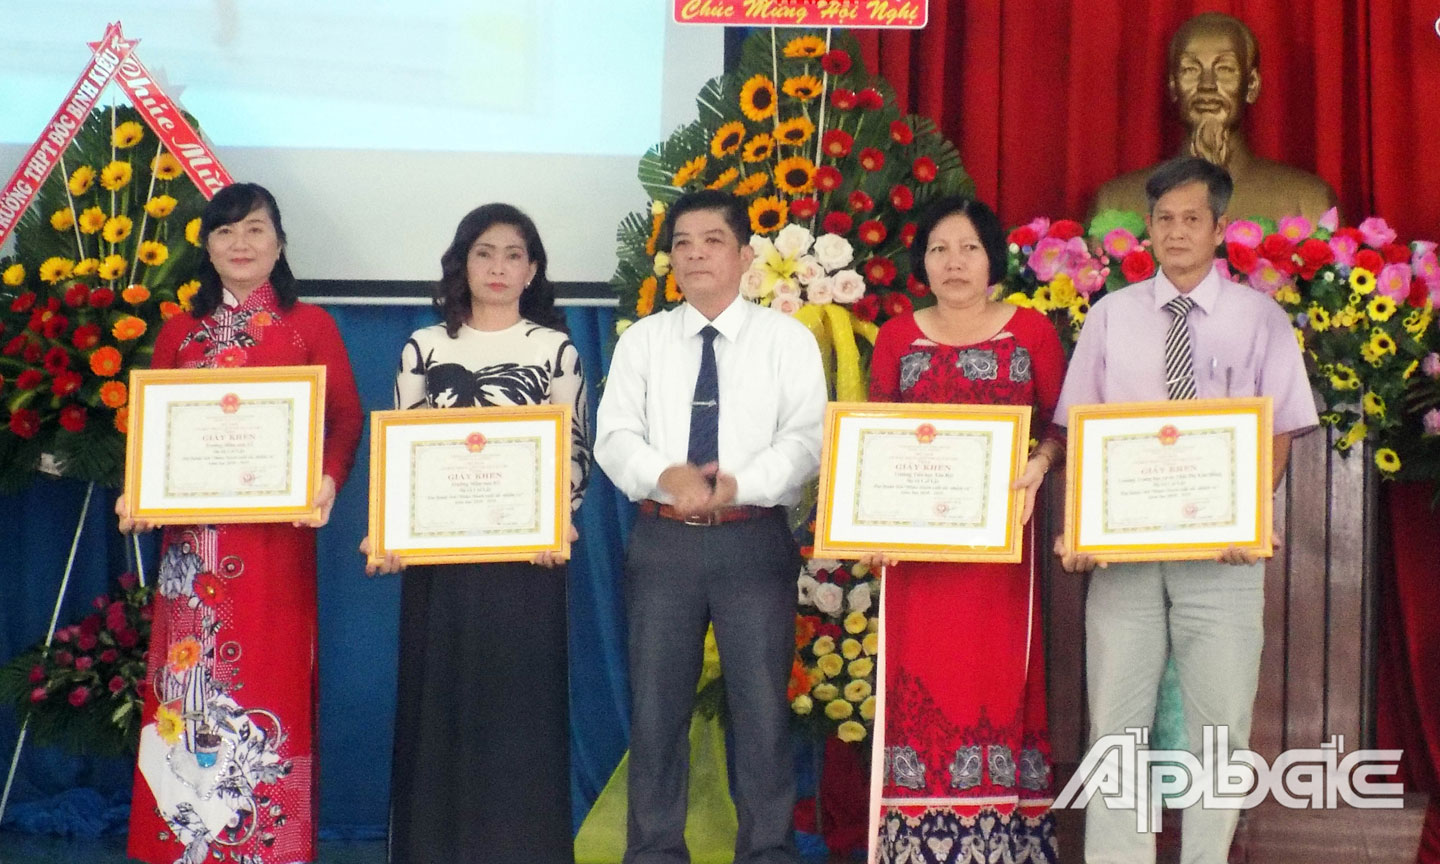 Cô Bích Phượng (bìa trái) nhận Giấy khen “Trường hoàn thành xuất sắc nhiệm vụ” tại Hội nghị tổng kết năm học 2018 - 2019 do UBND TX. Cai Lậy tổ chức.